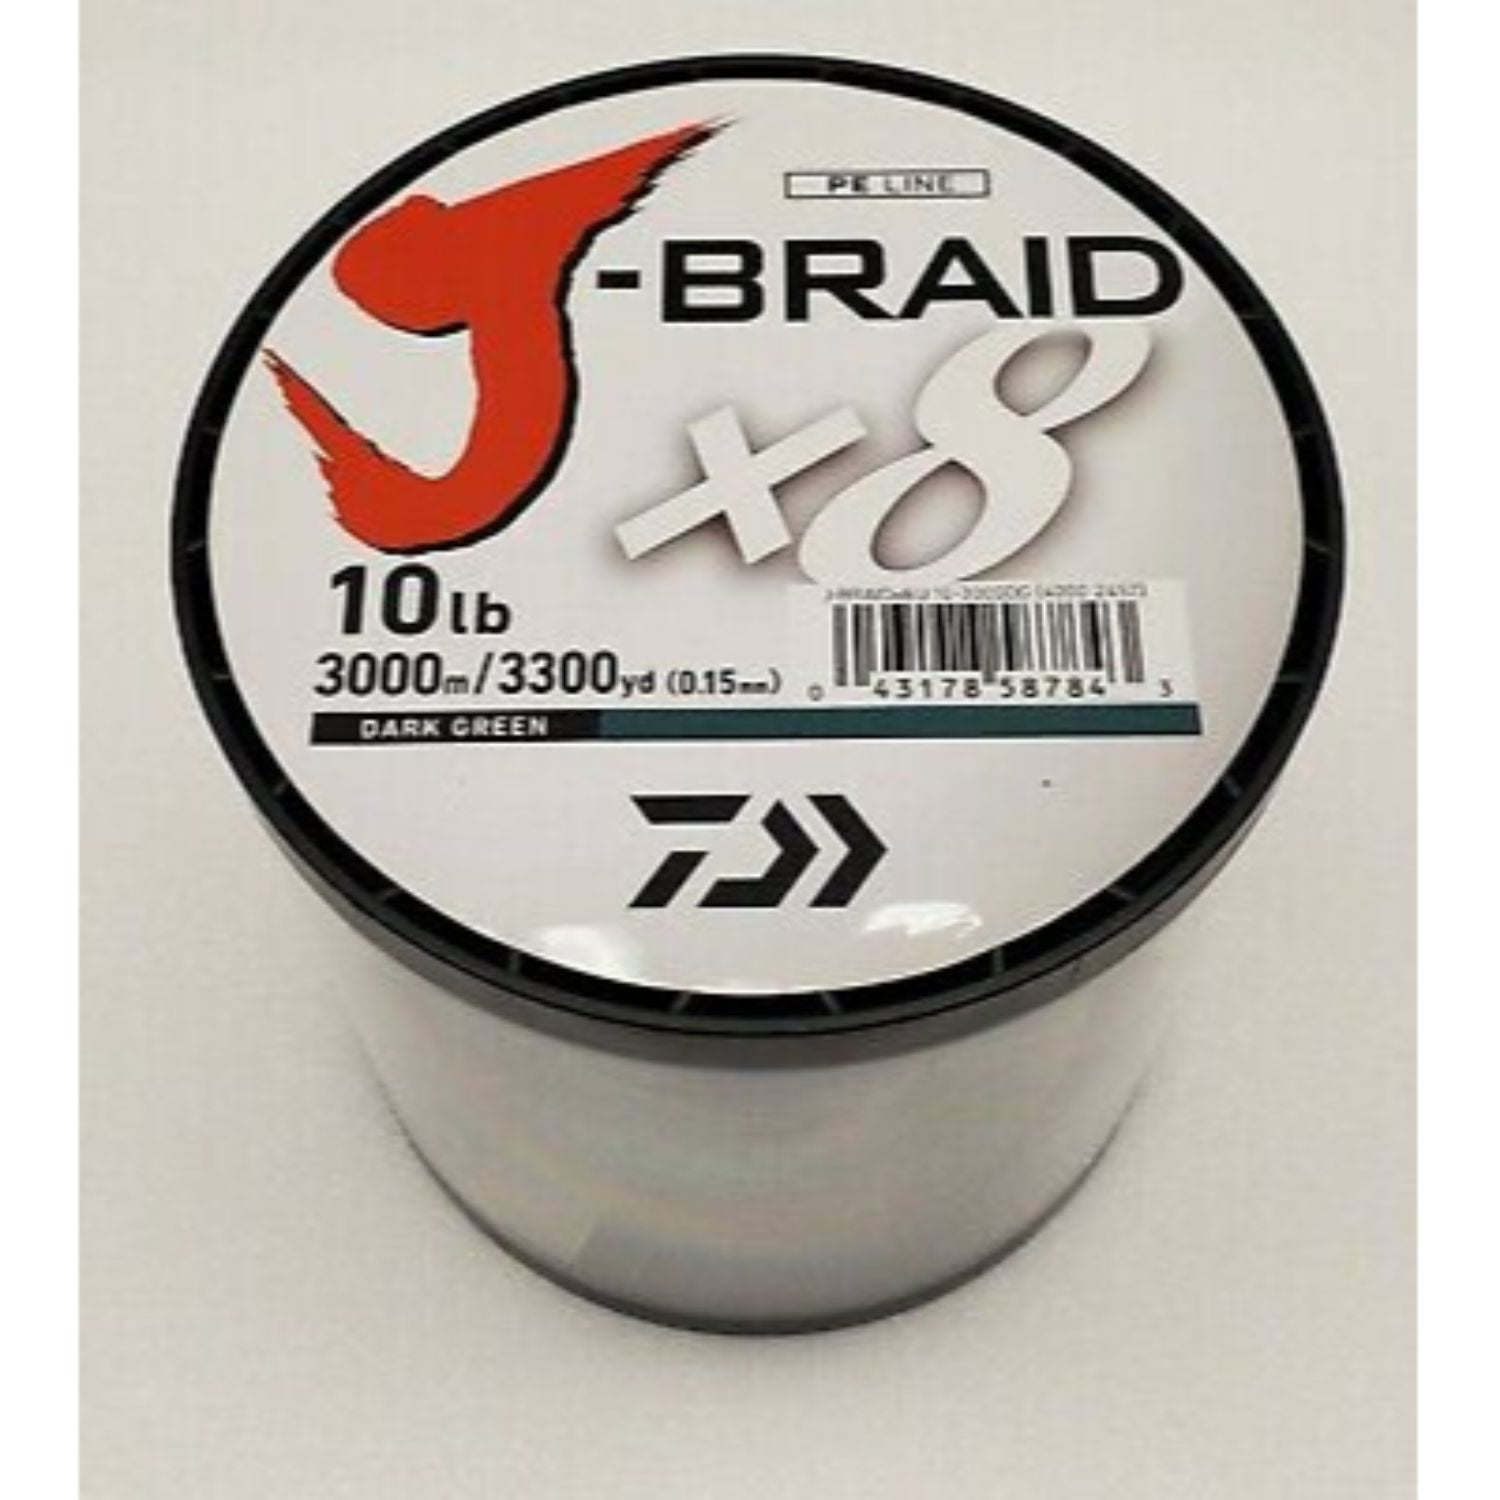 Daiwa J-Braid x8 Braided Line DARK GREEN 10lb, 3300yd - JB8U10-3000DG 